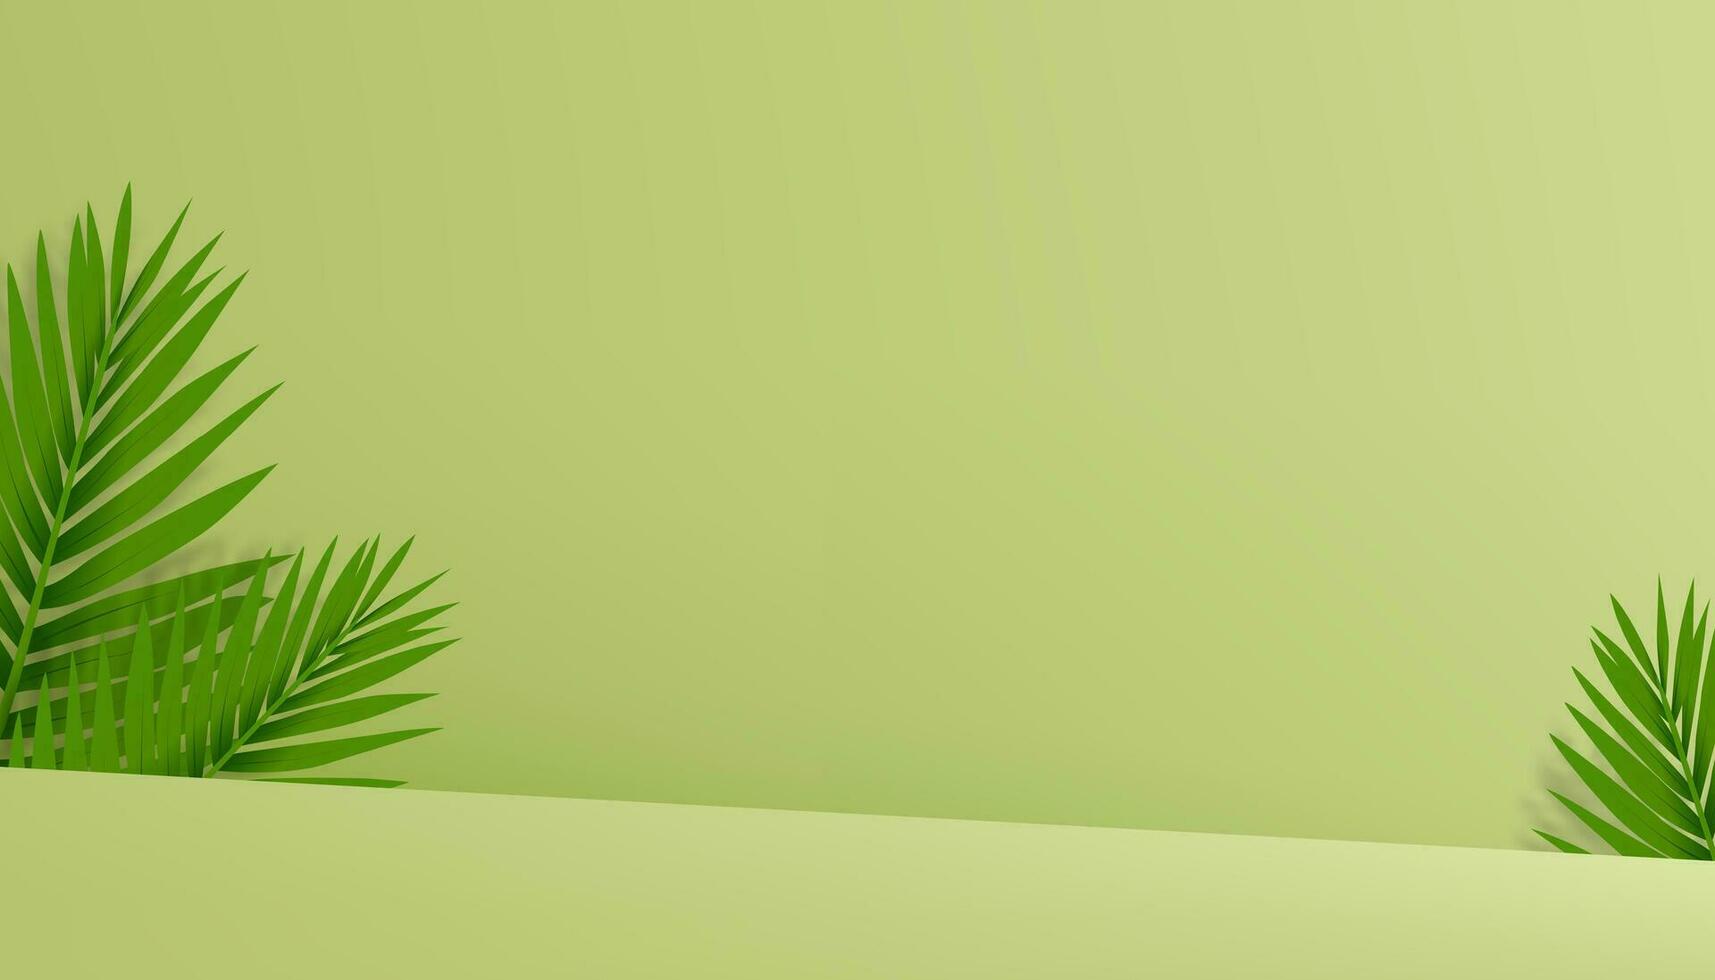 Studio Hintergrund mit Palme Blätter und Schatten auf Grün Mauer Beton .Vektor leeren Produkt Anzeige Podium mit Kokosnuss Blatt, Hintergrund Banner zum Frühling, Sommer- Kosmetik, Hautpflege, Schönheit Präsentation vektor